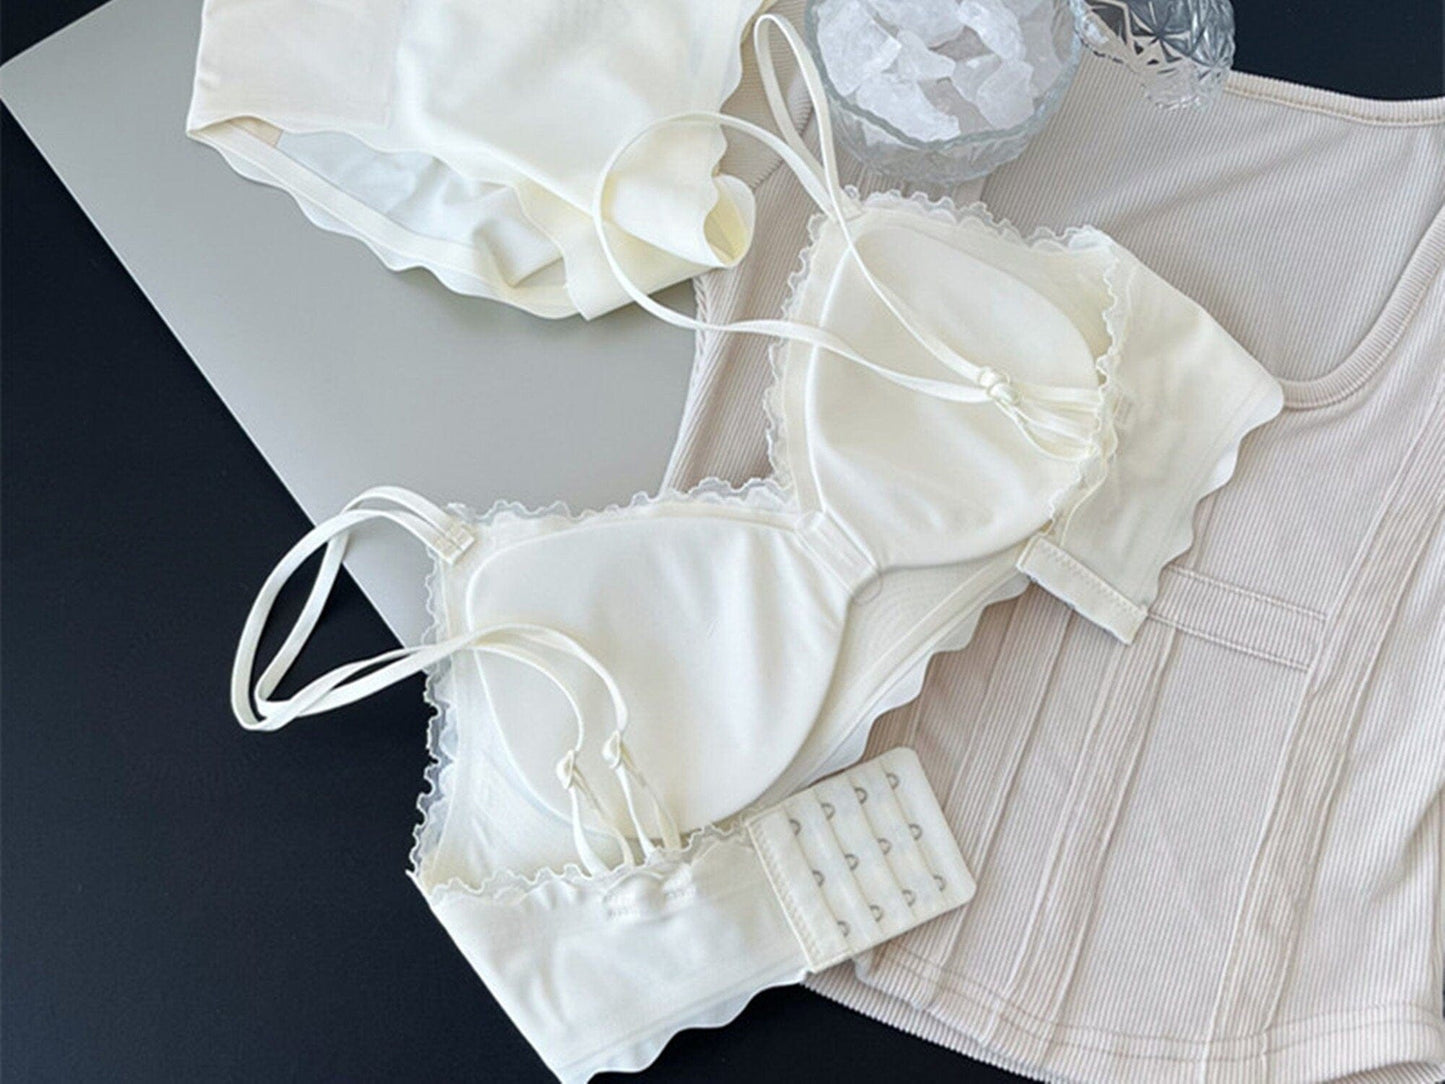 Alpha C Seamless Smooth Wireless lingerie Comfort Thin Padded Support Bralette Push up bra for small breast bra LingerieSetArt White / S US women's letter